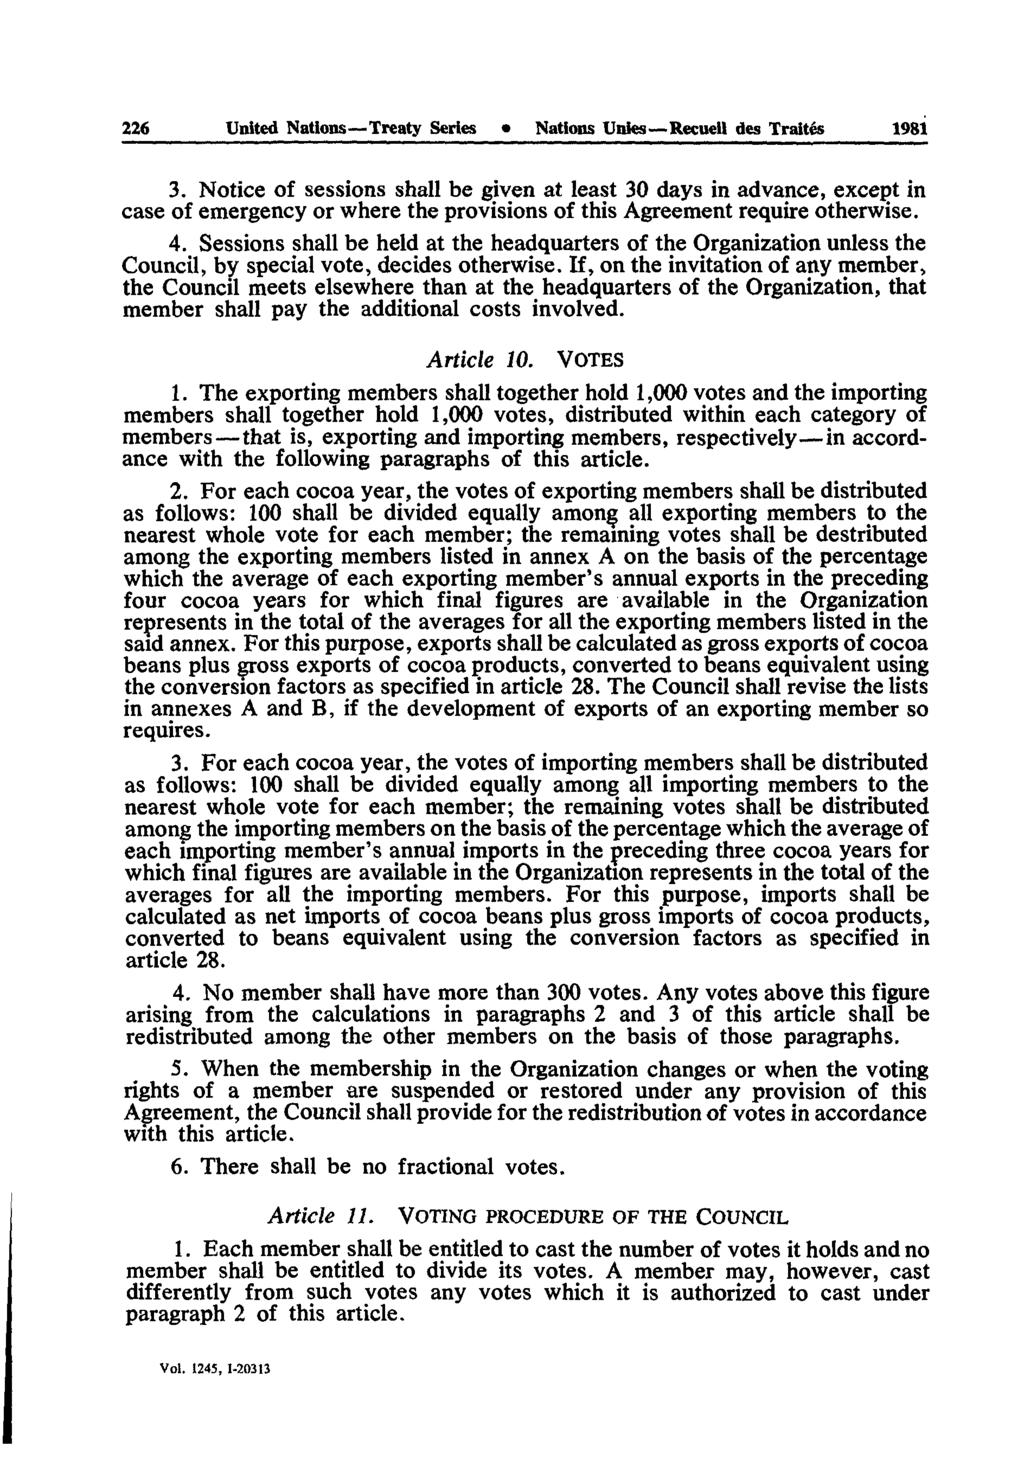 226 United Nations Treaty Series Nations Unies Reçue» des Traités 1981 3.